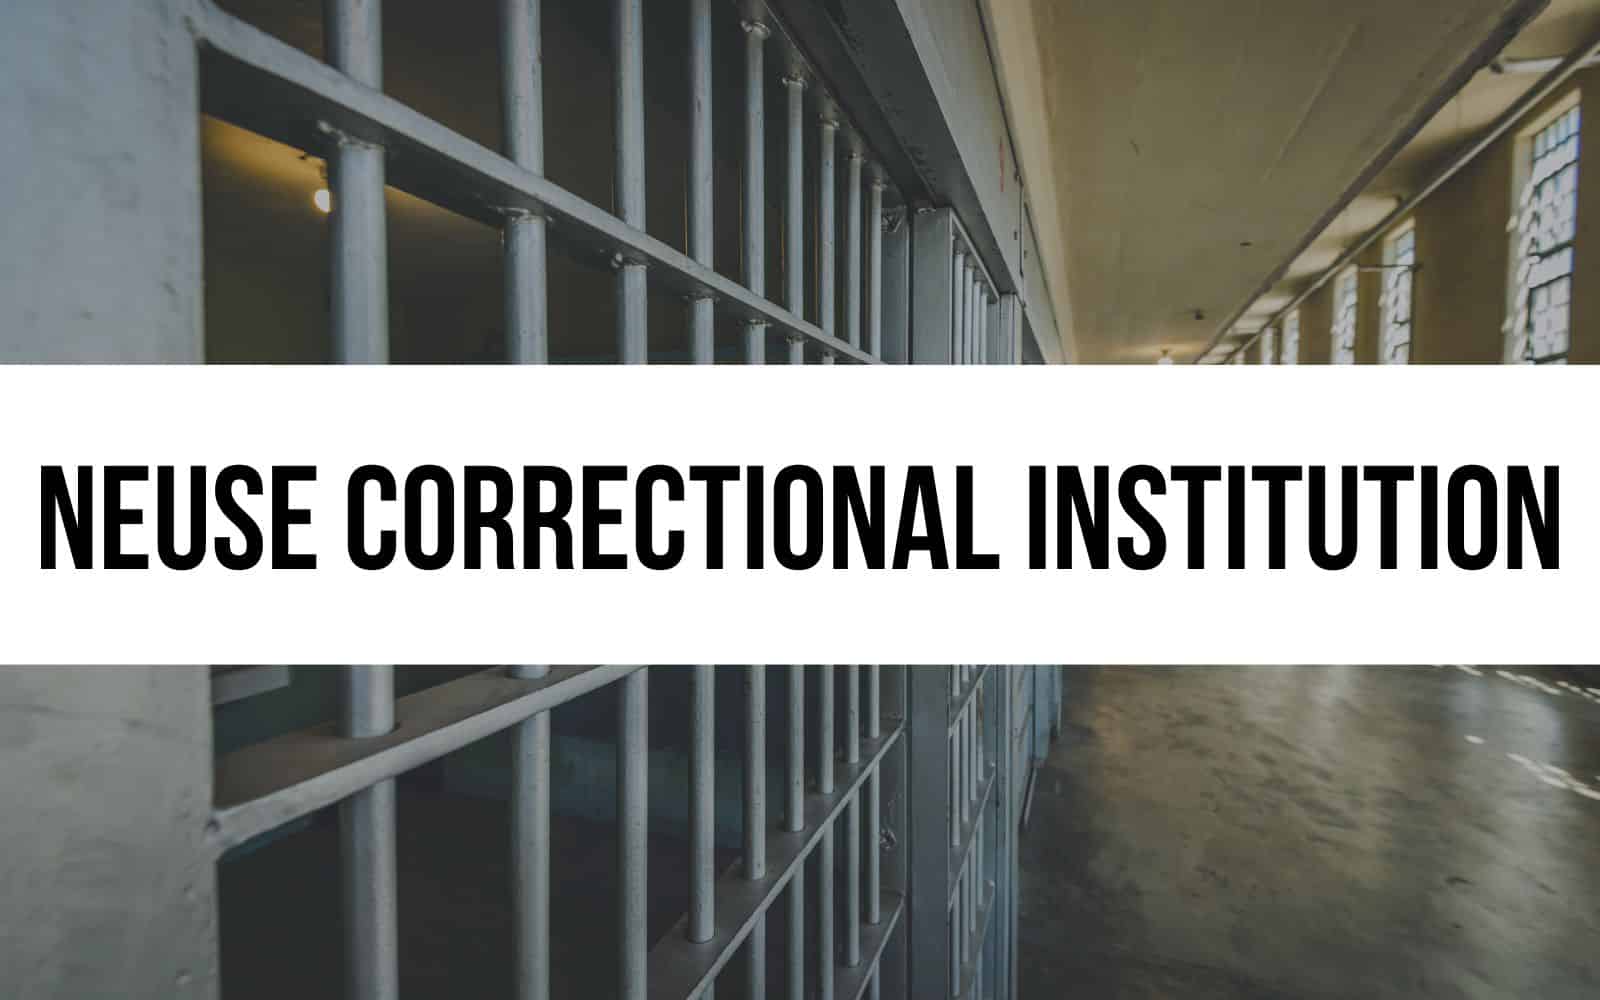 Neuse Correctional Institution